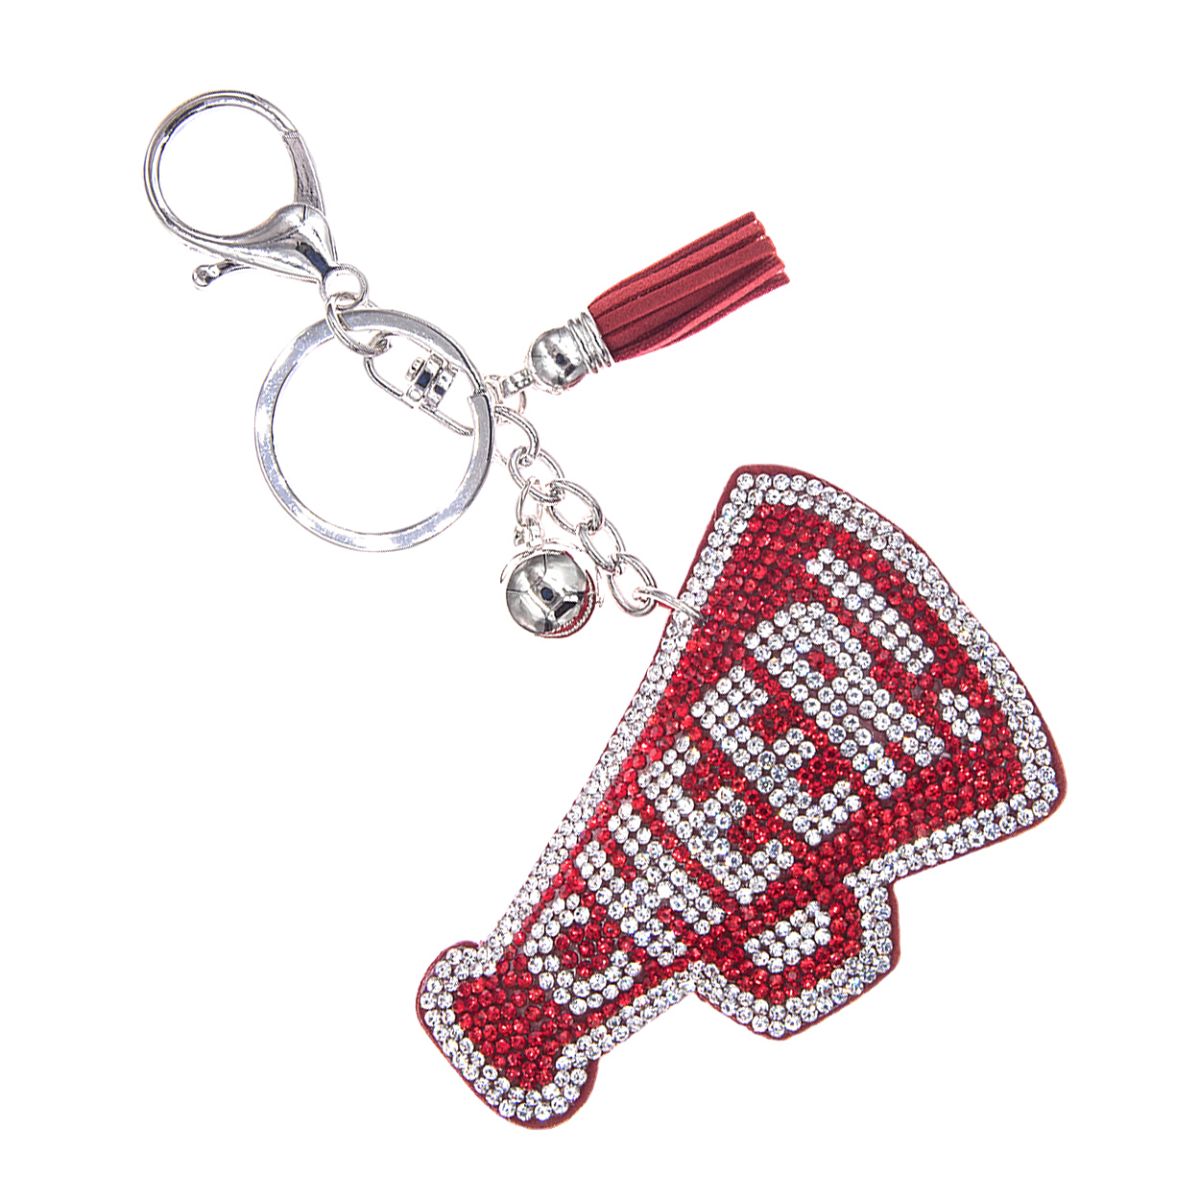 Red Megaphone Keychain Bag Charm